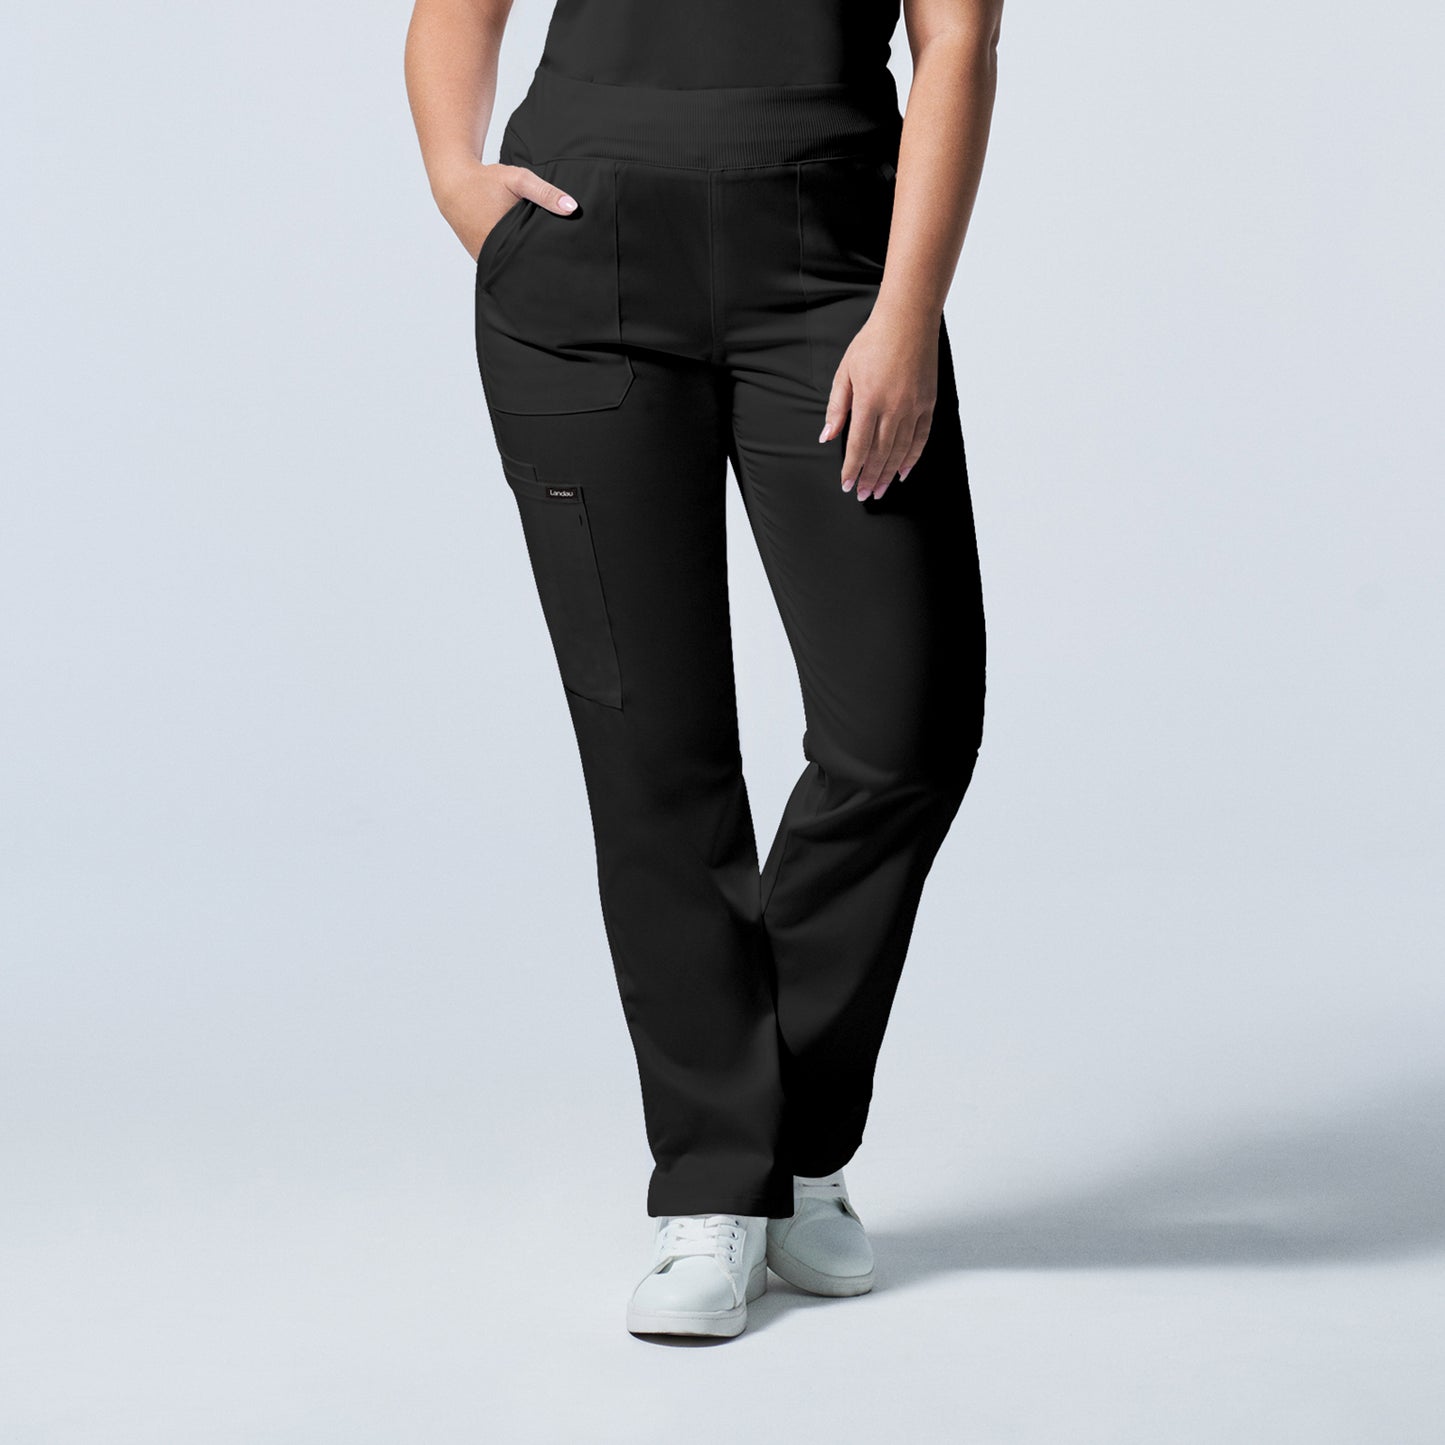 Pantalon droit femme - PROFLEX - LB 405 longueur régulière